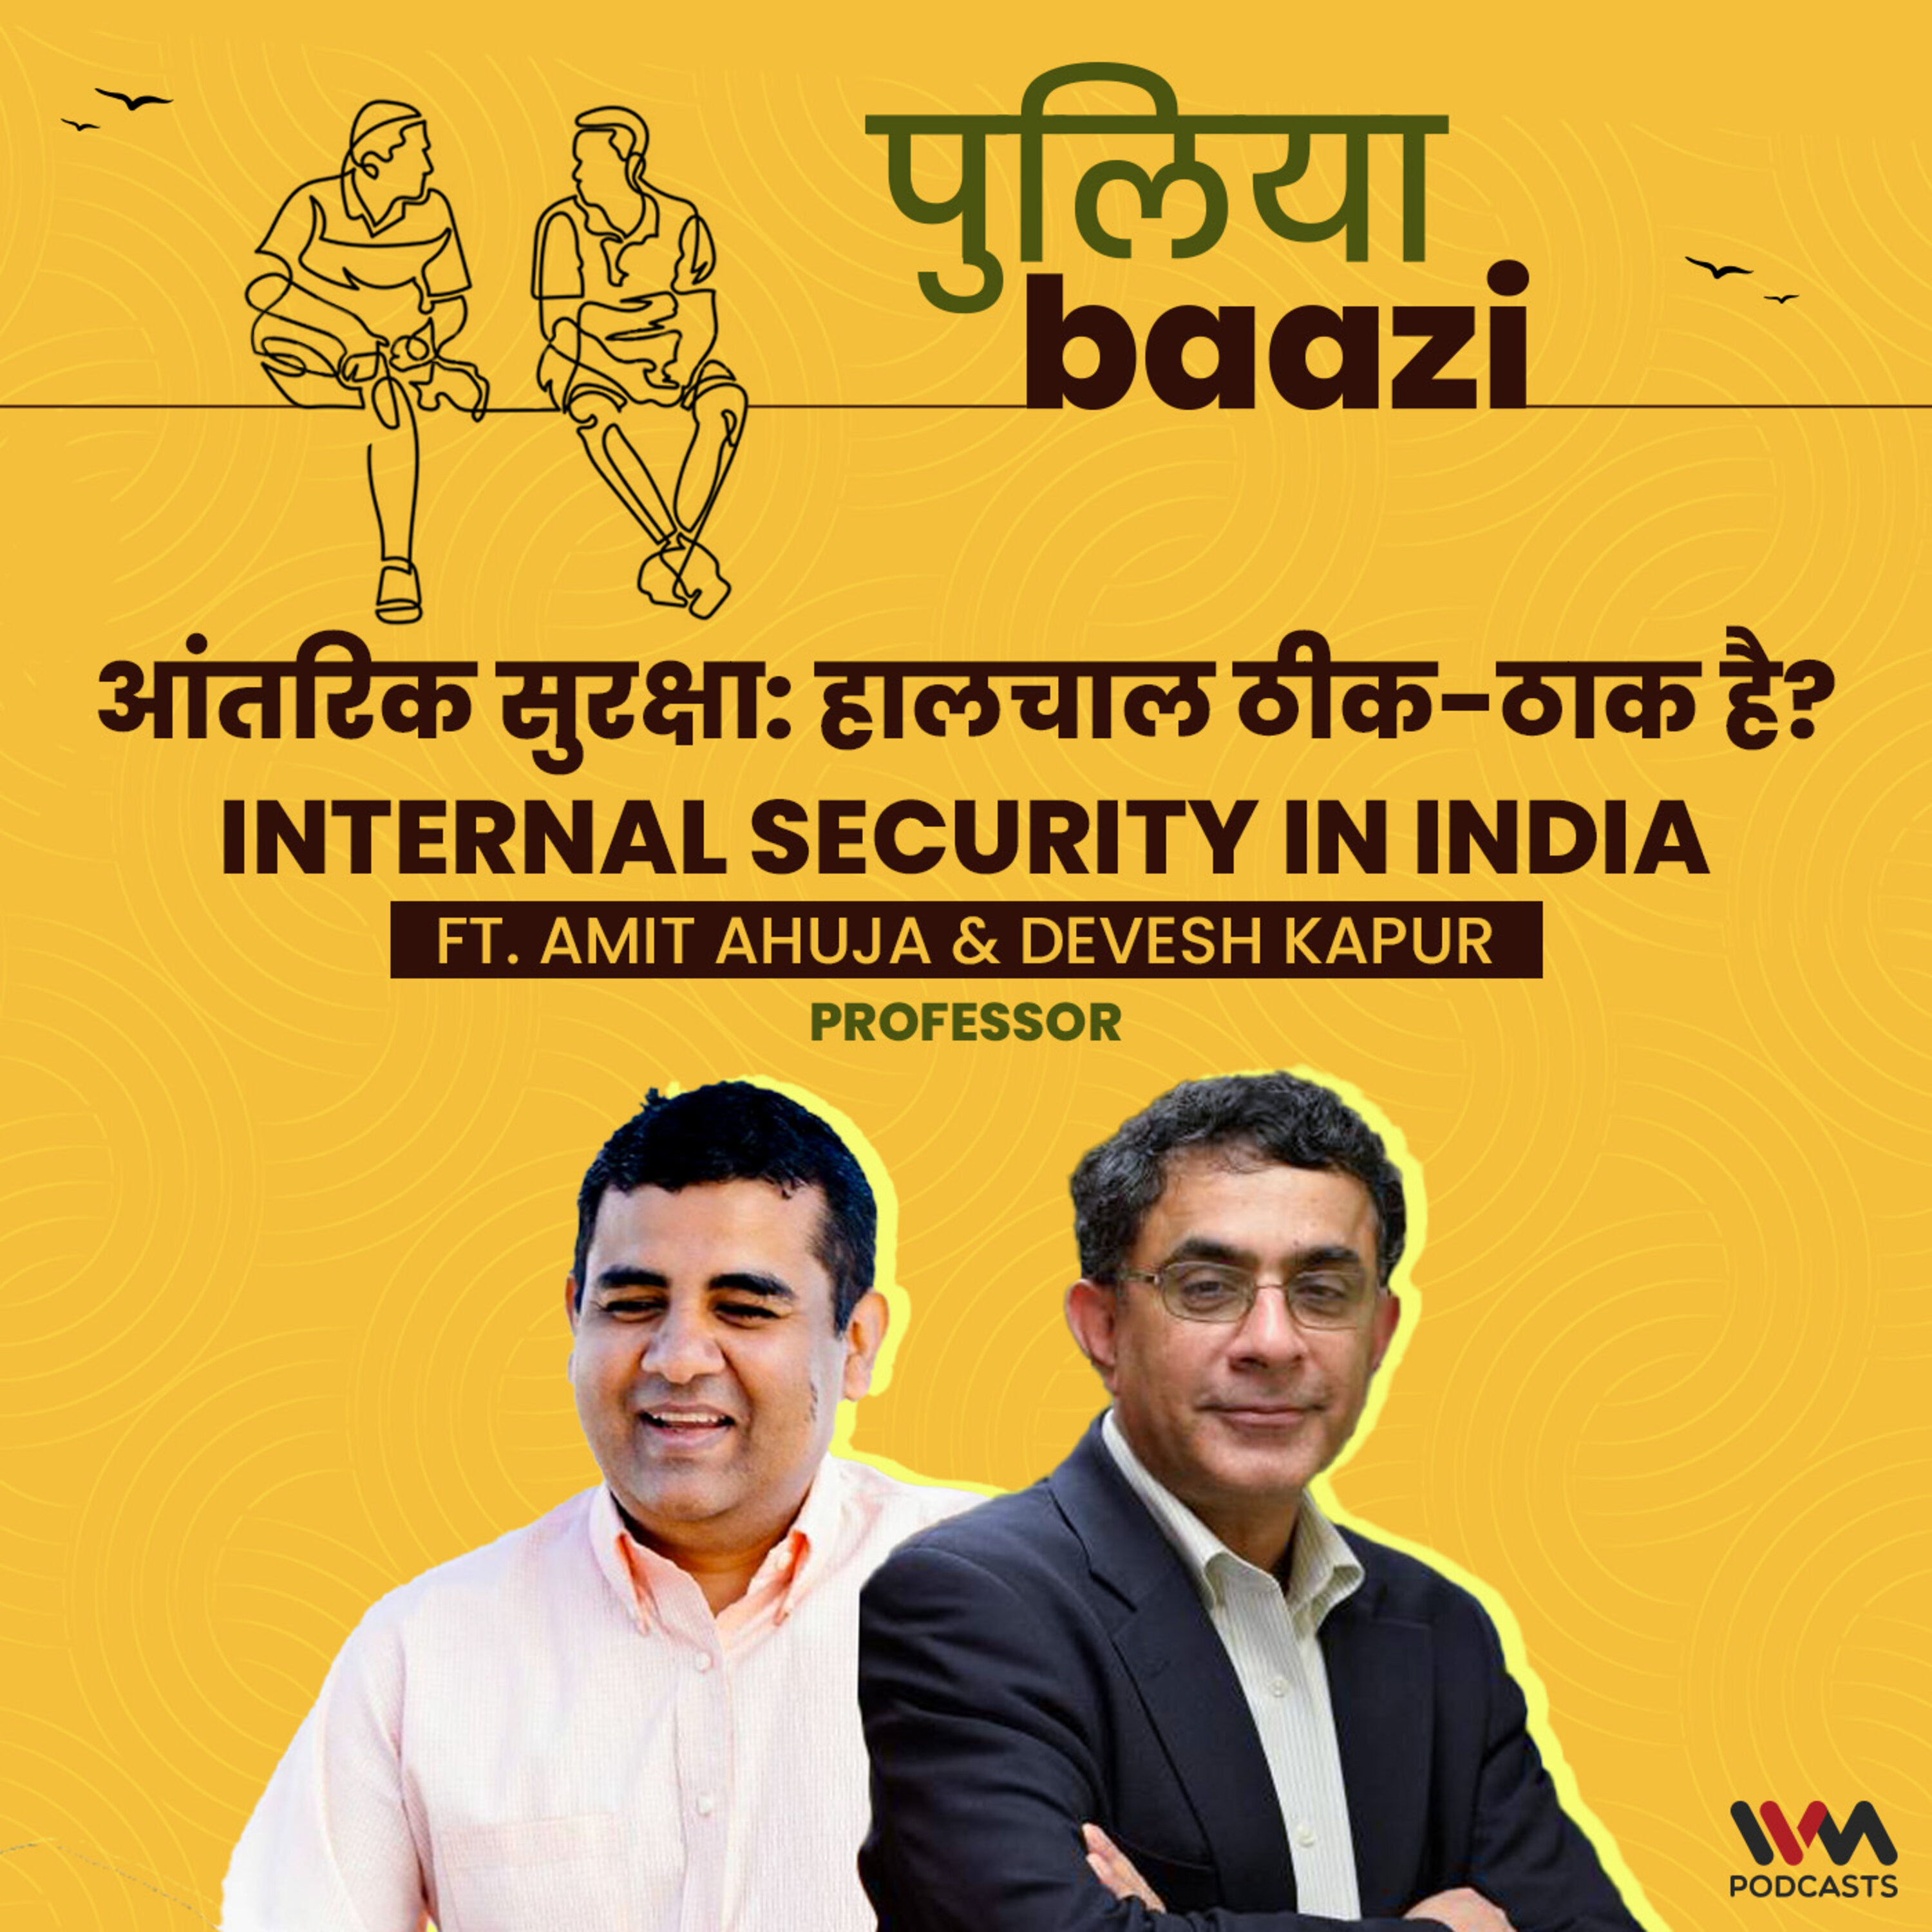 आंतरिक सुरक्षा: हालचाल ठीक-ठाक है? Internal Security in India ft. Devesh Kapur & Amit Ahuja